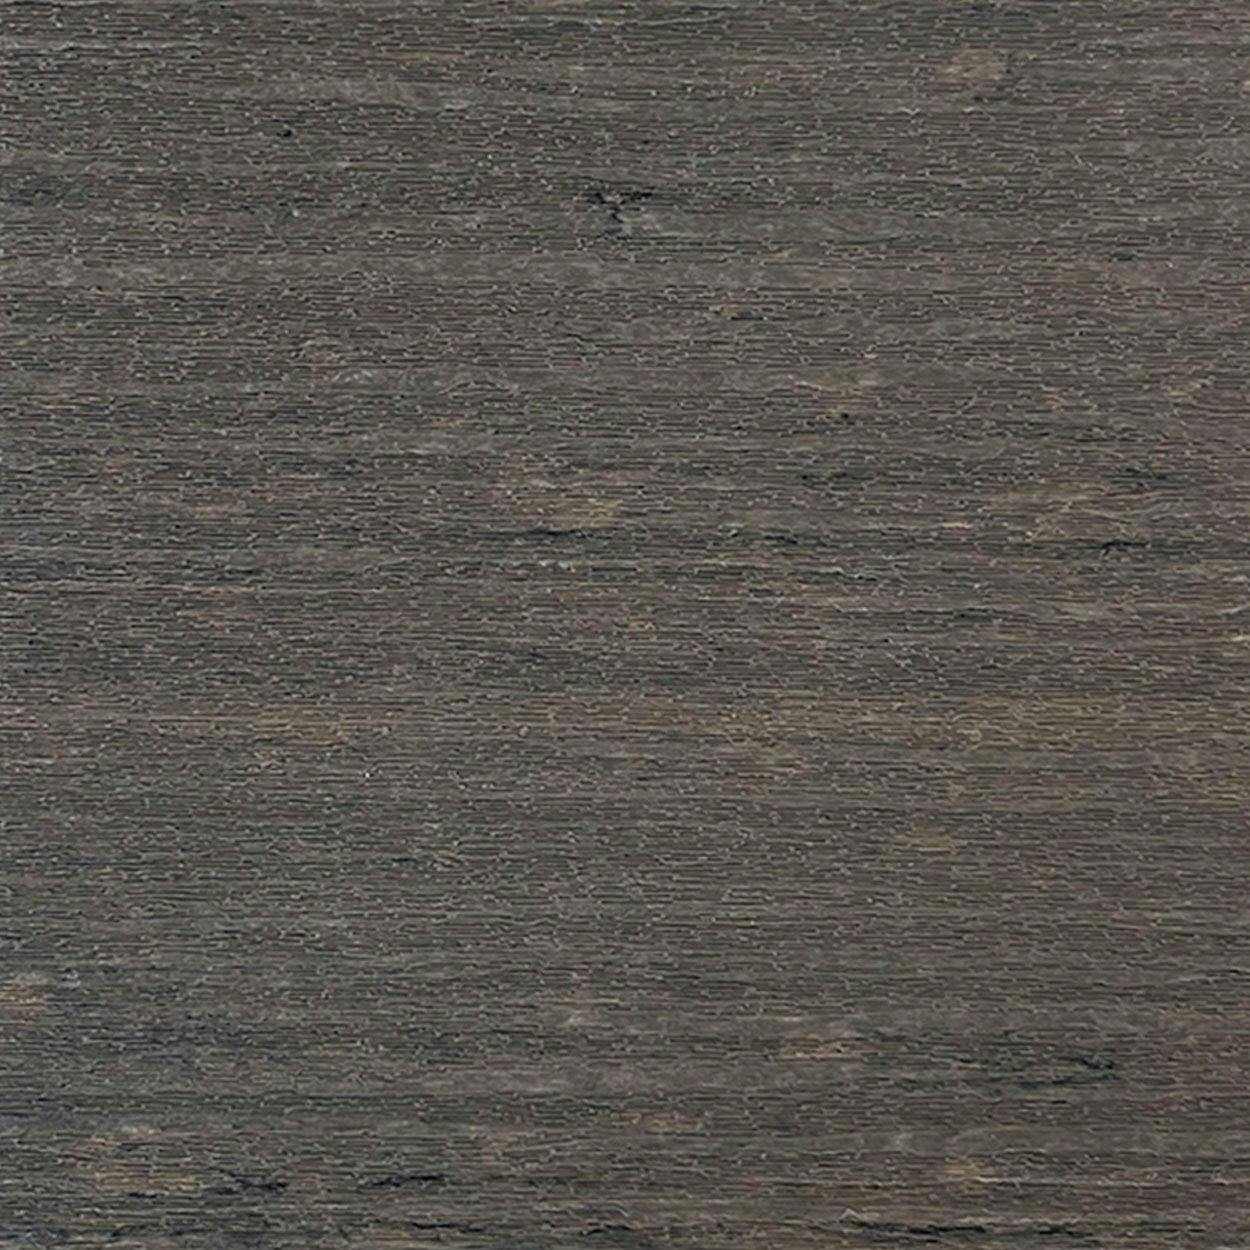 Coastal Gray Lumber